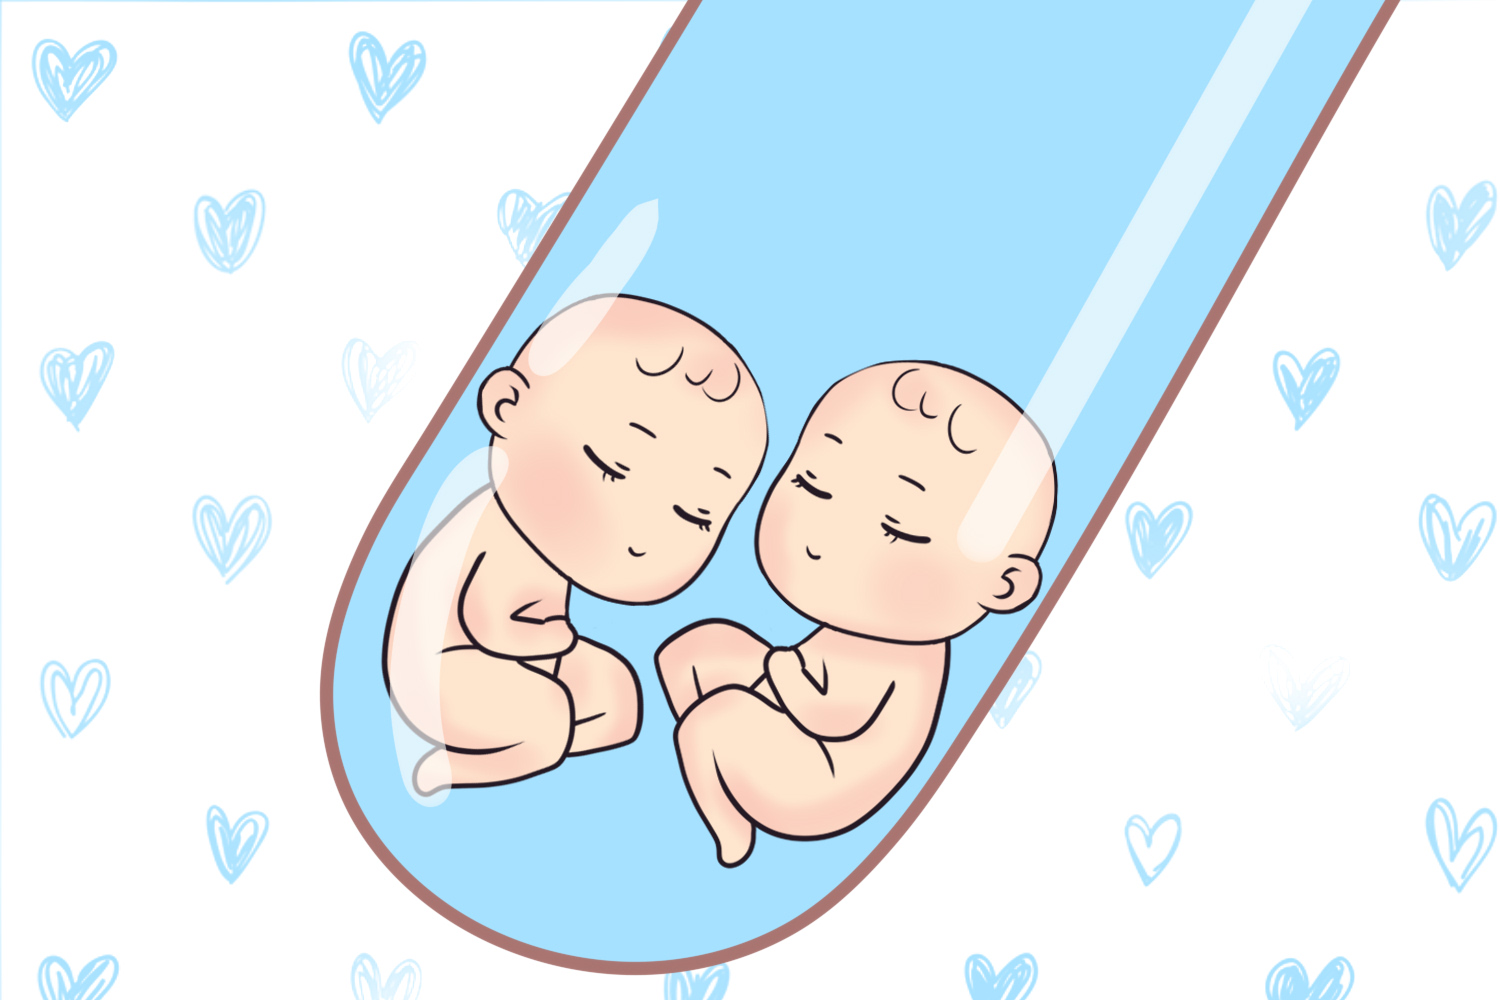 人工受孕双胞胎图片